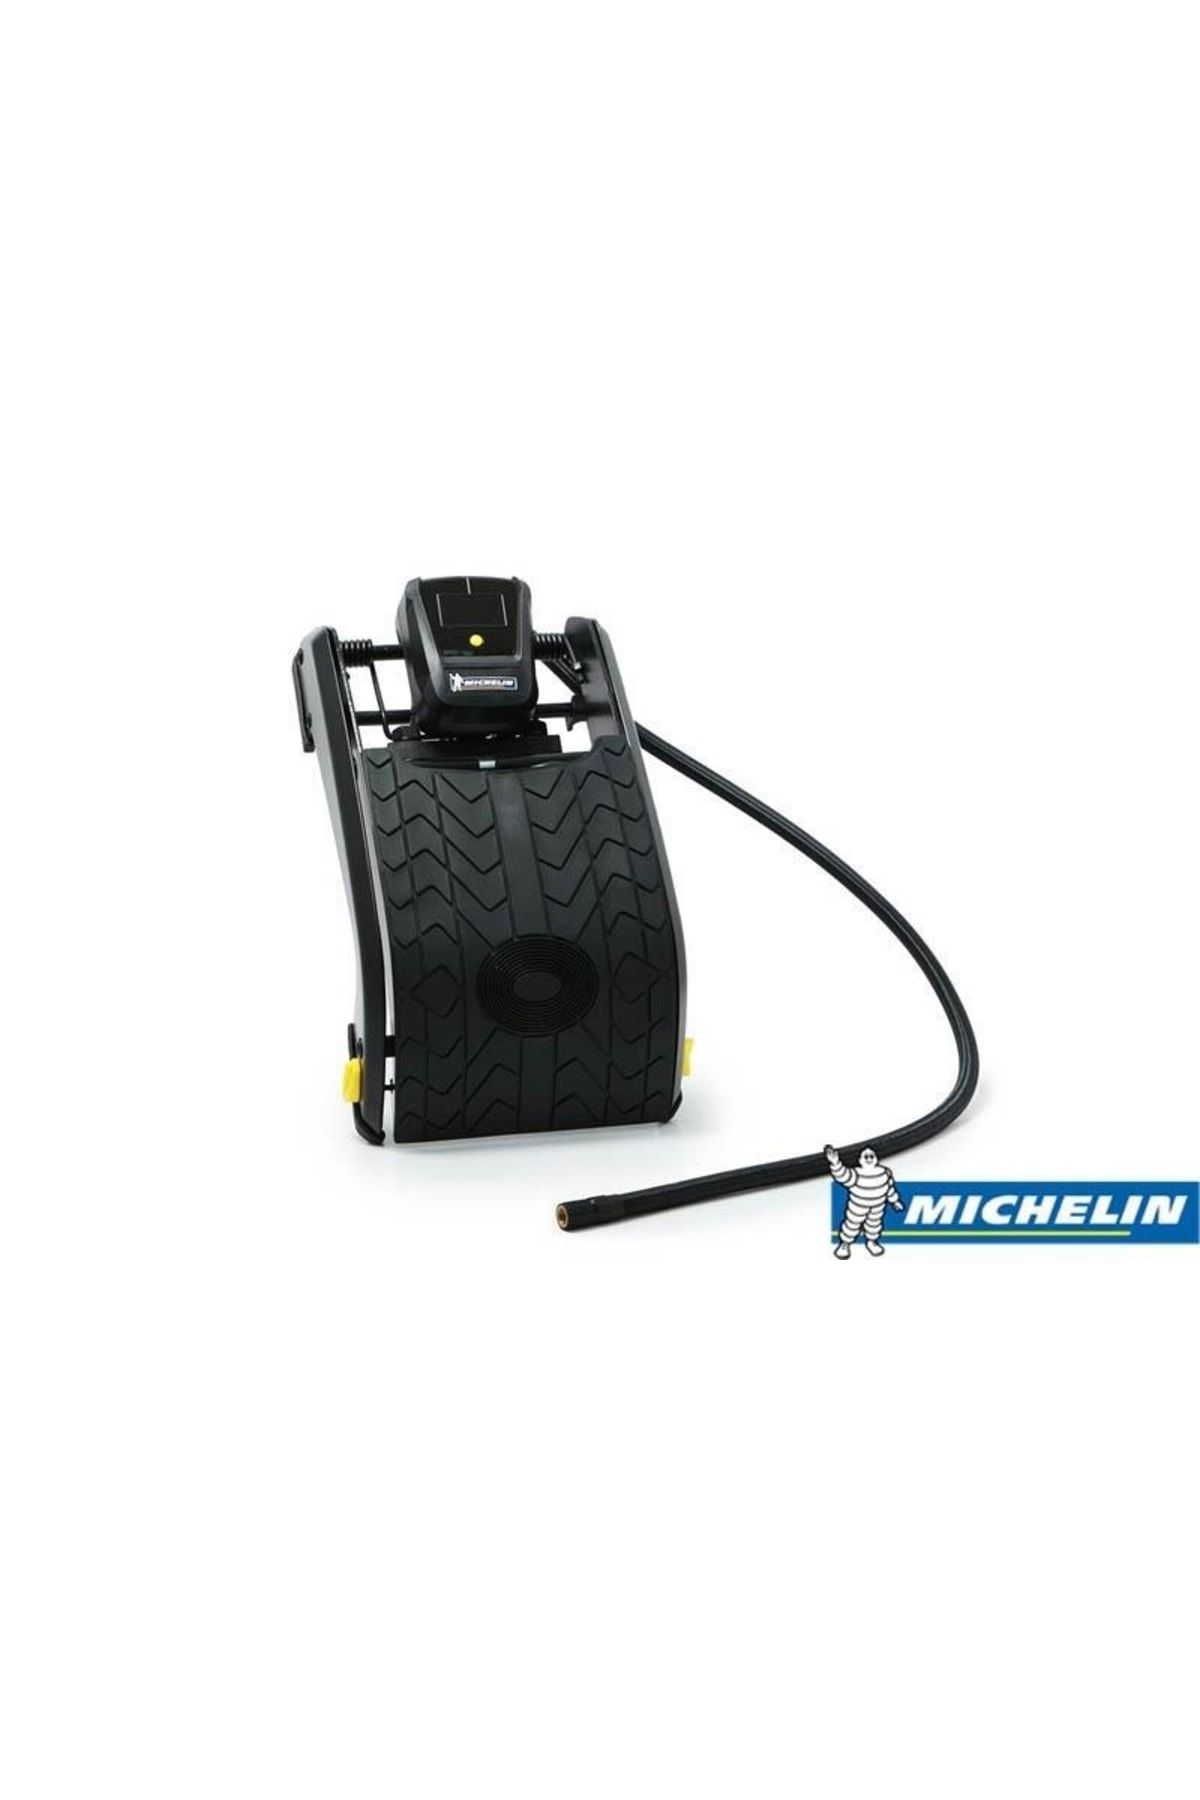 Michelin Mc12209 Dijital Basınç Göstergeli Çift Pistonlu Ayak Pompası MICMC12209